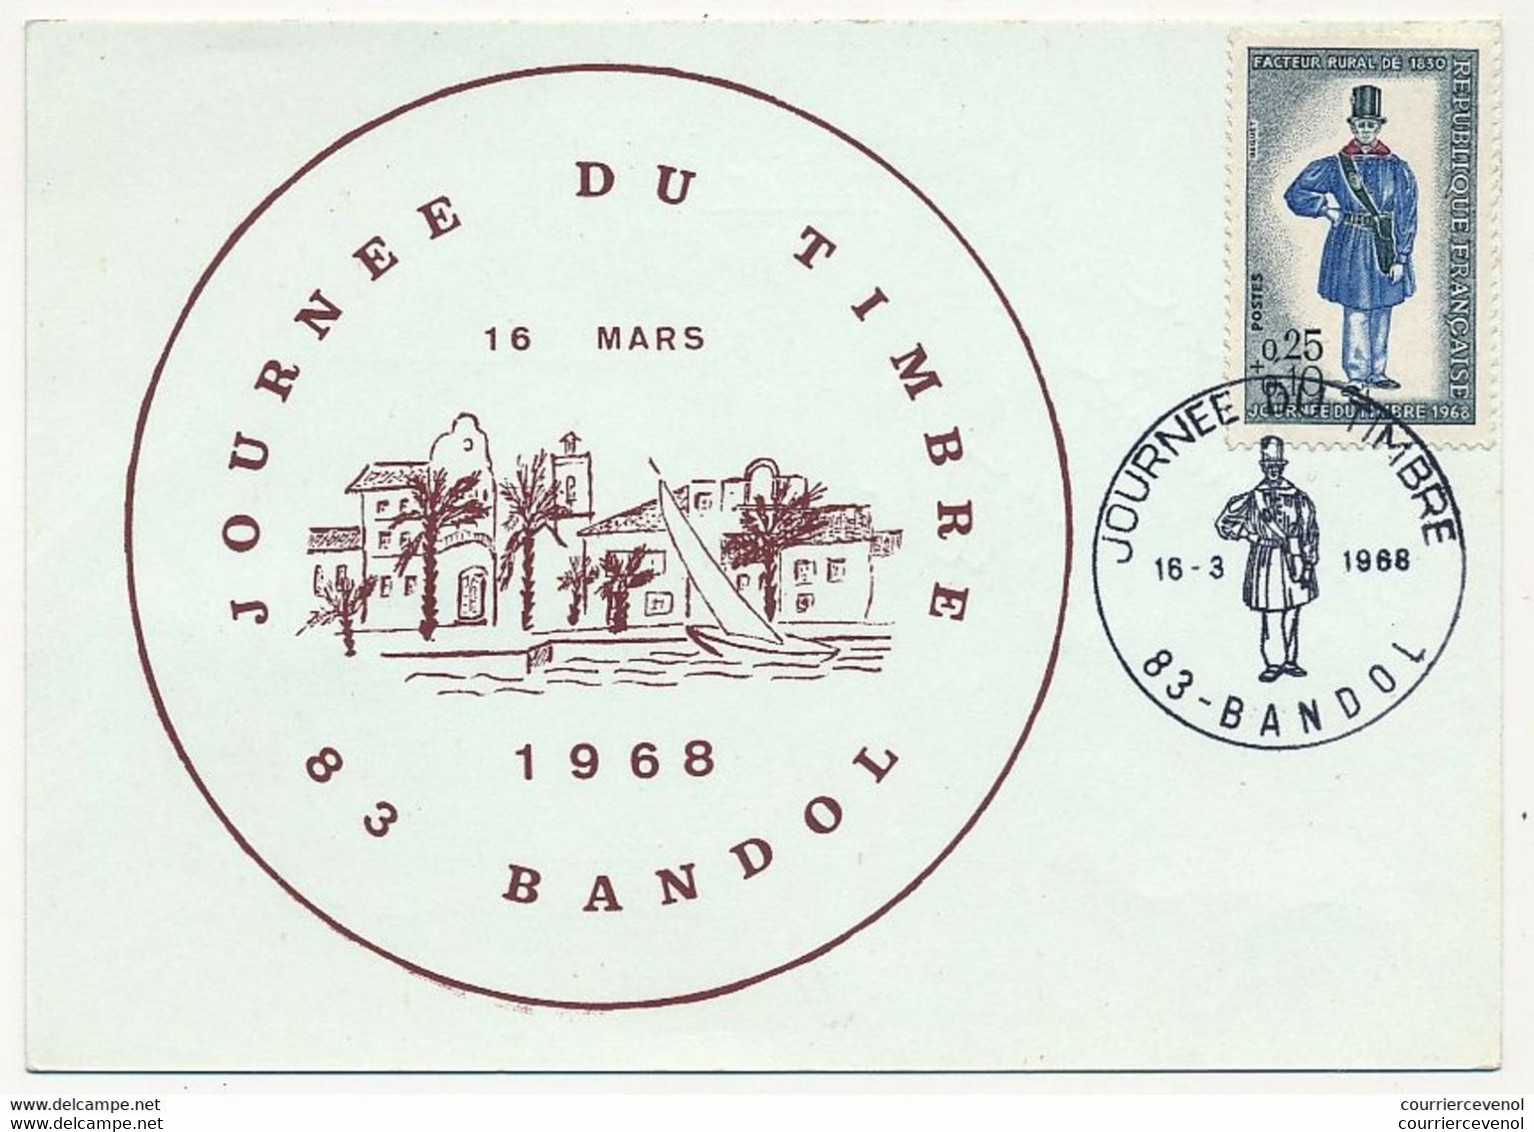 FRANCE - Carte Locale - Journée Du Timbre 1968 - Facteur Rural De 1830 - 83 BANDOL - 16/3/1968 - Tag Der Briefmarke